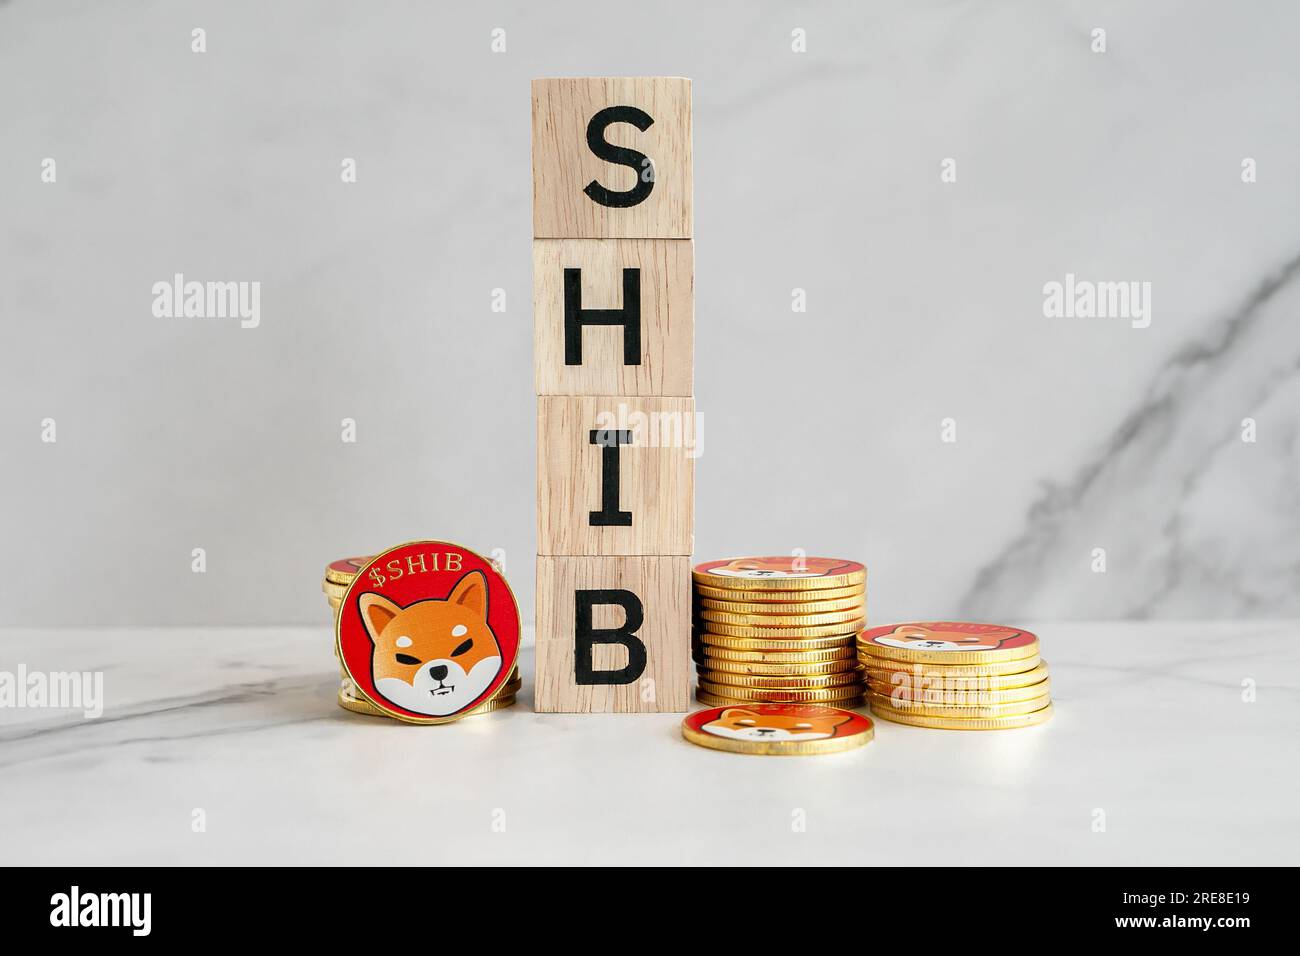 Molte delle monete Shiba inu (SHIB) sono collocate verticalmente accanto a un blocco di legno al centro con uno sfondo di marmo bianco. Foto Stock